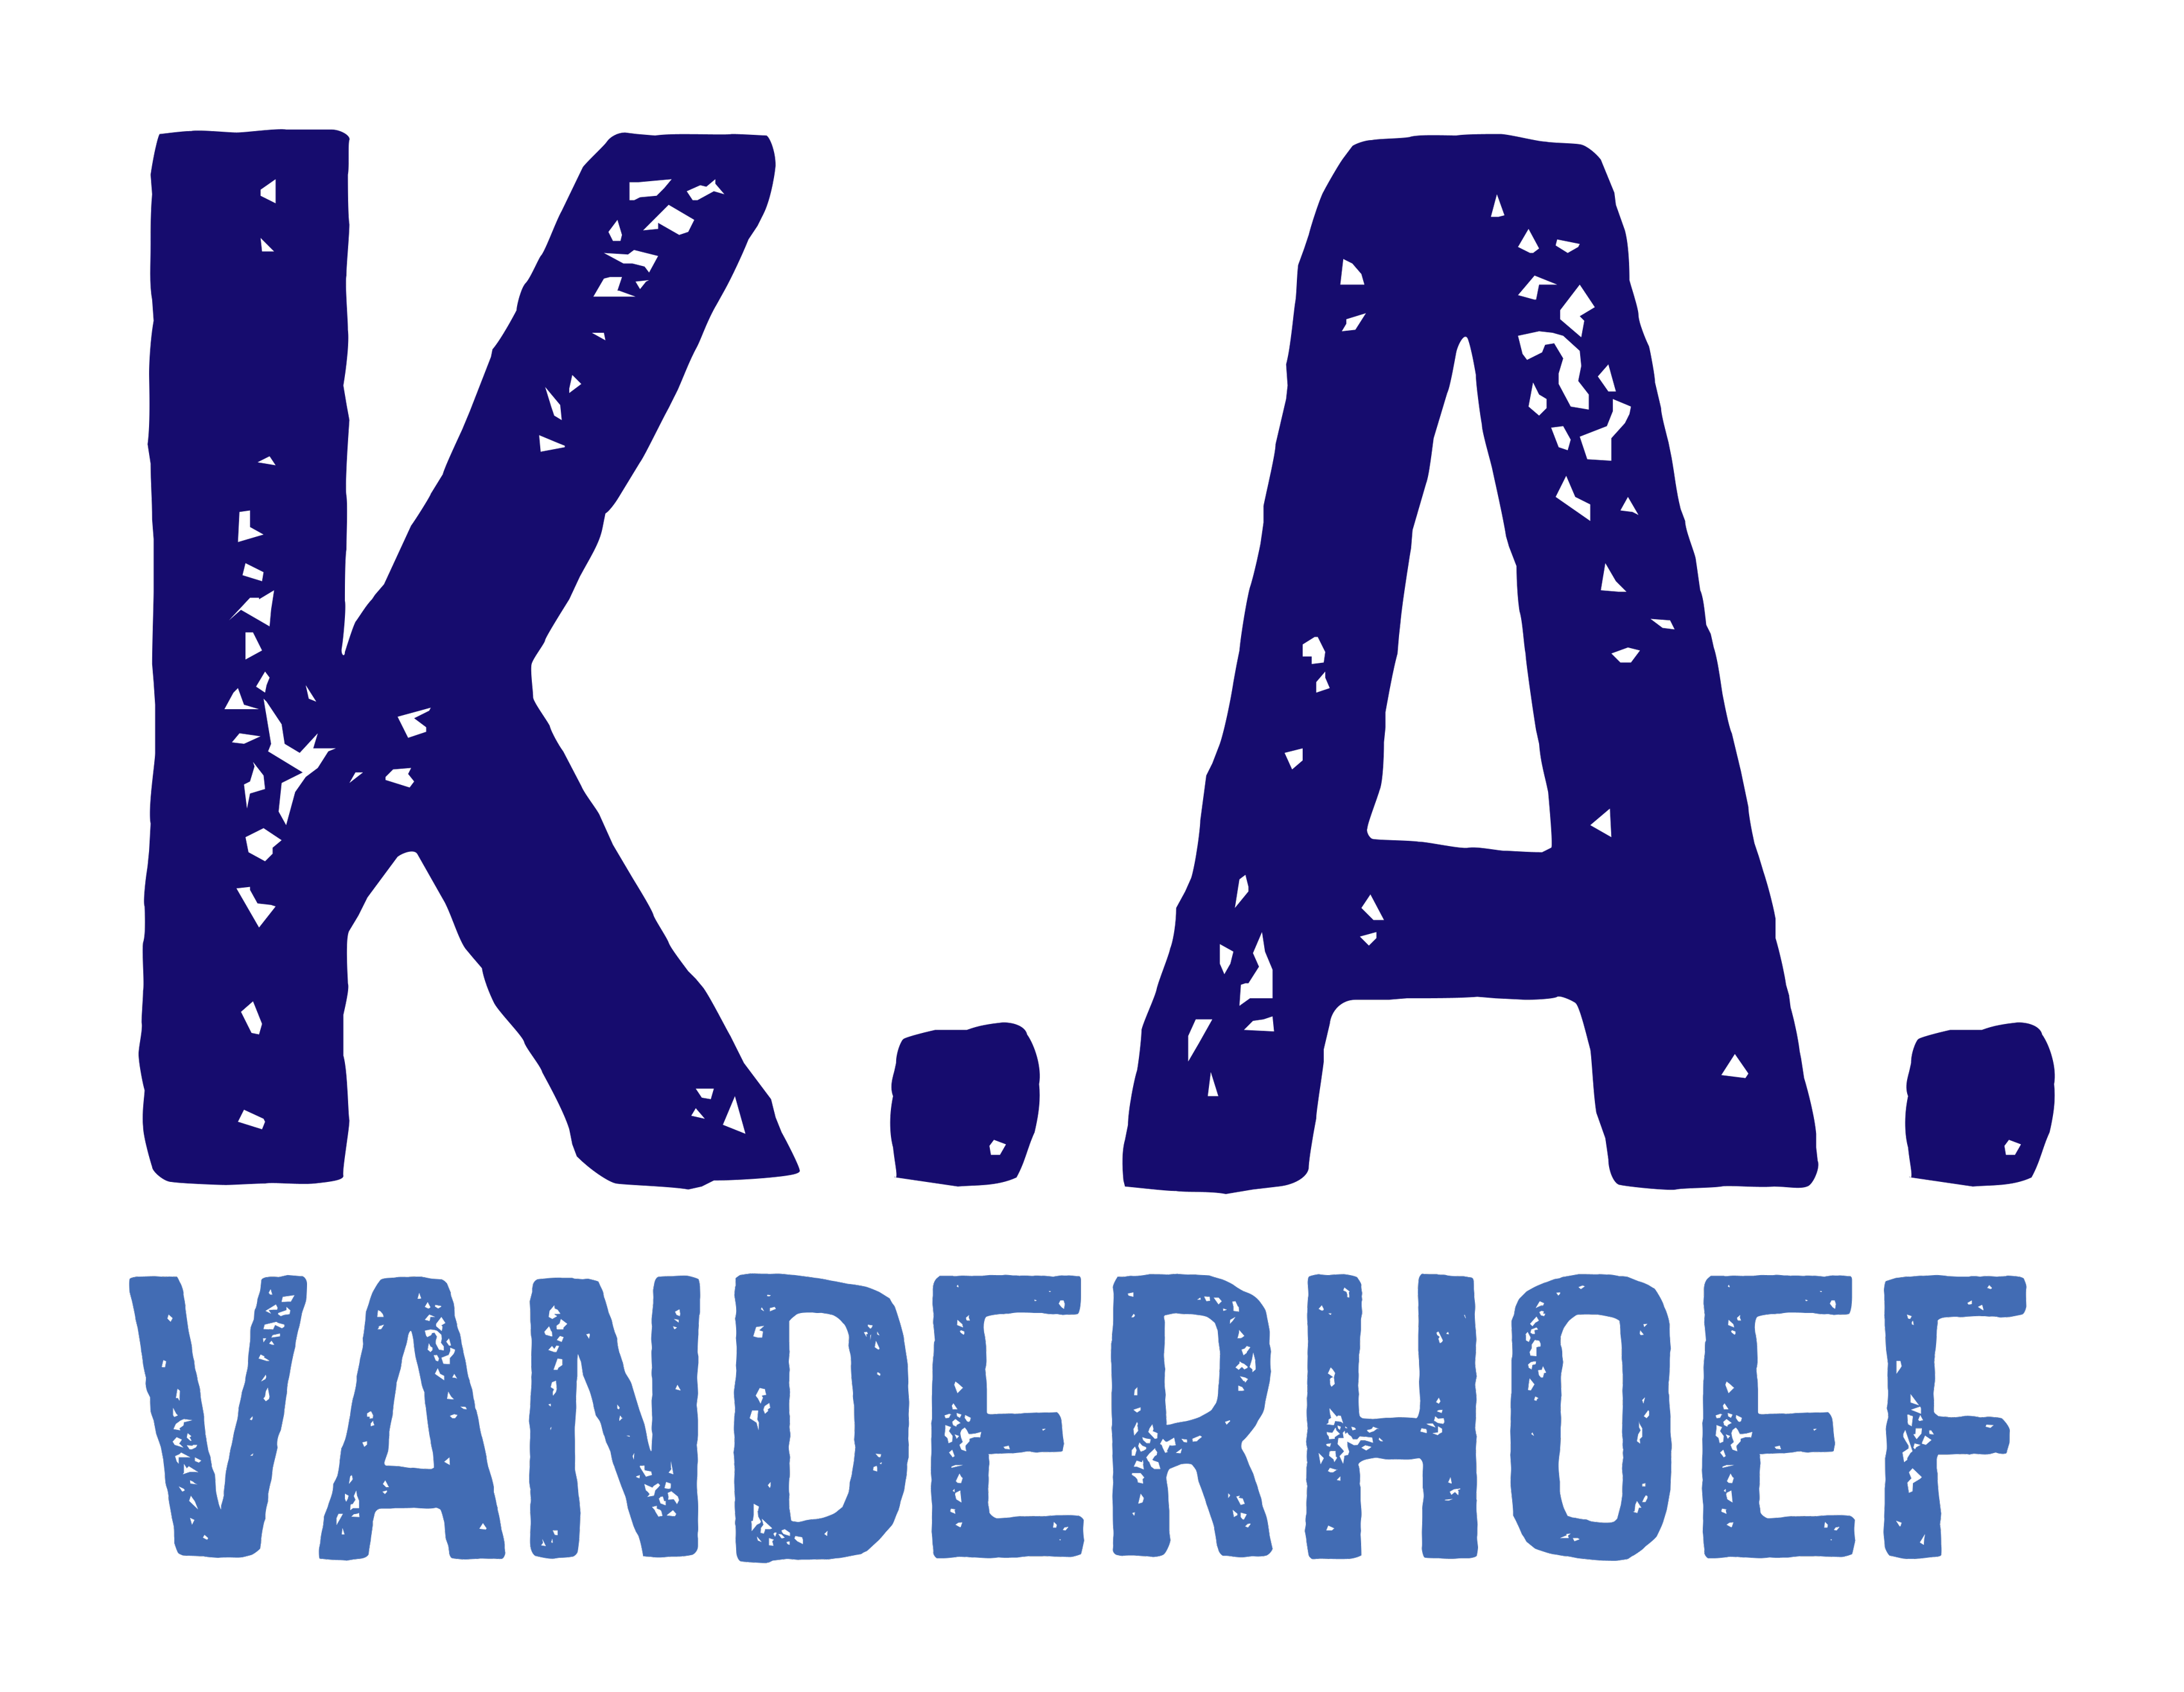 K.A. Vanderhoef